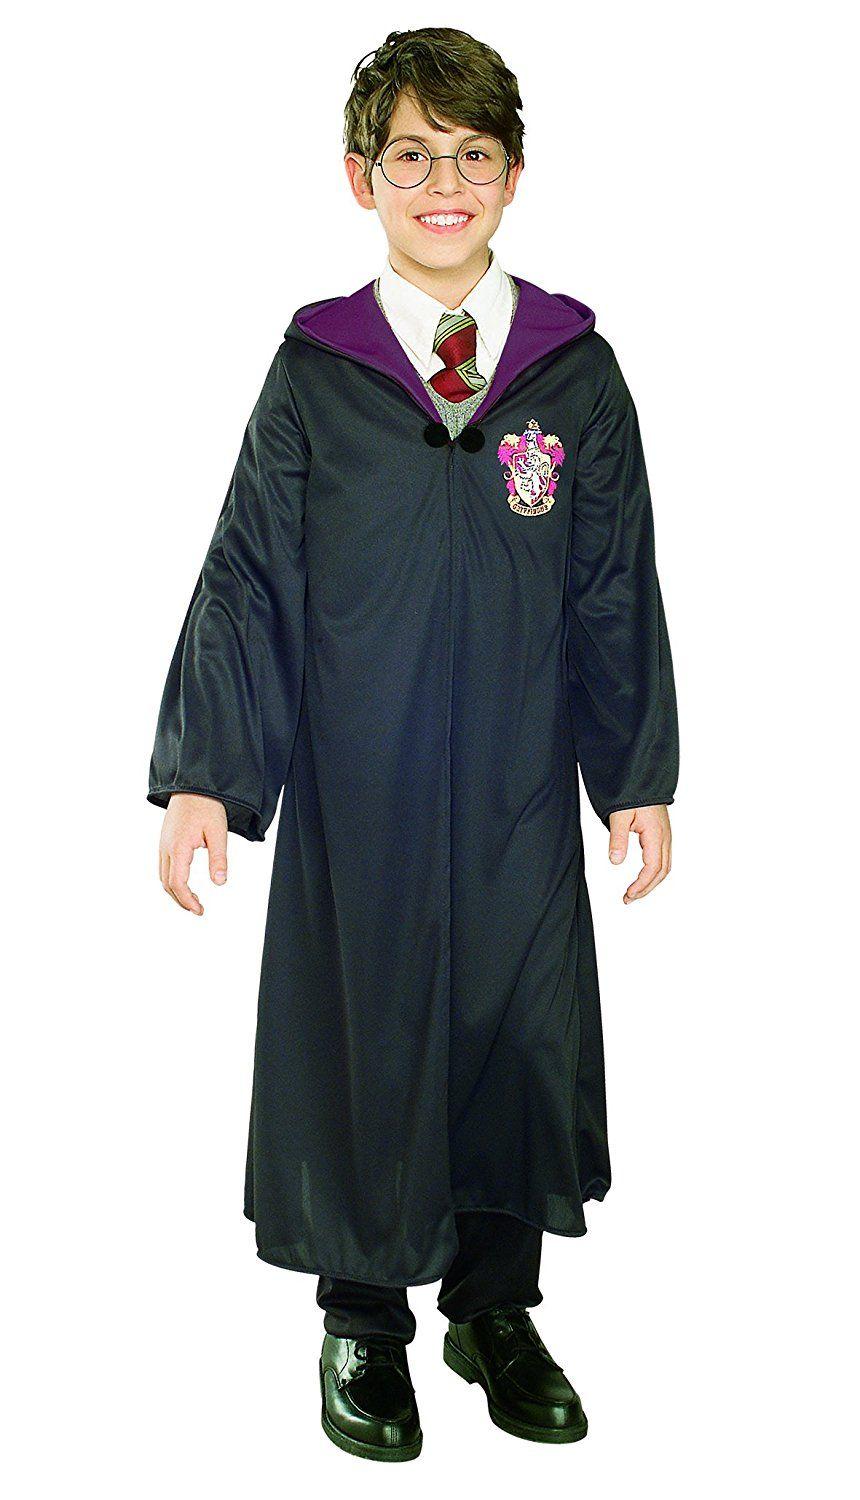 Déguisement Enfant Harry Potter Gryffondor Taille S Rubies 884252